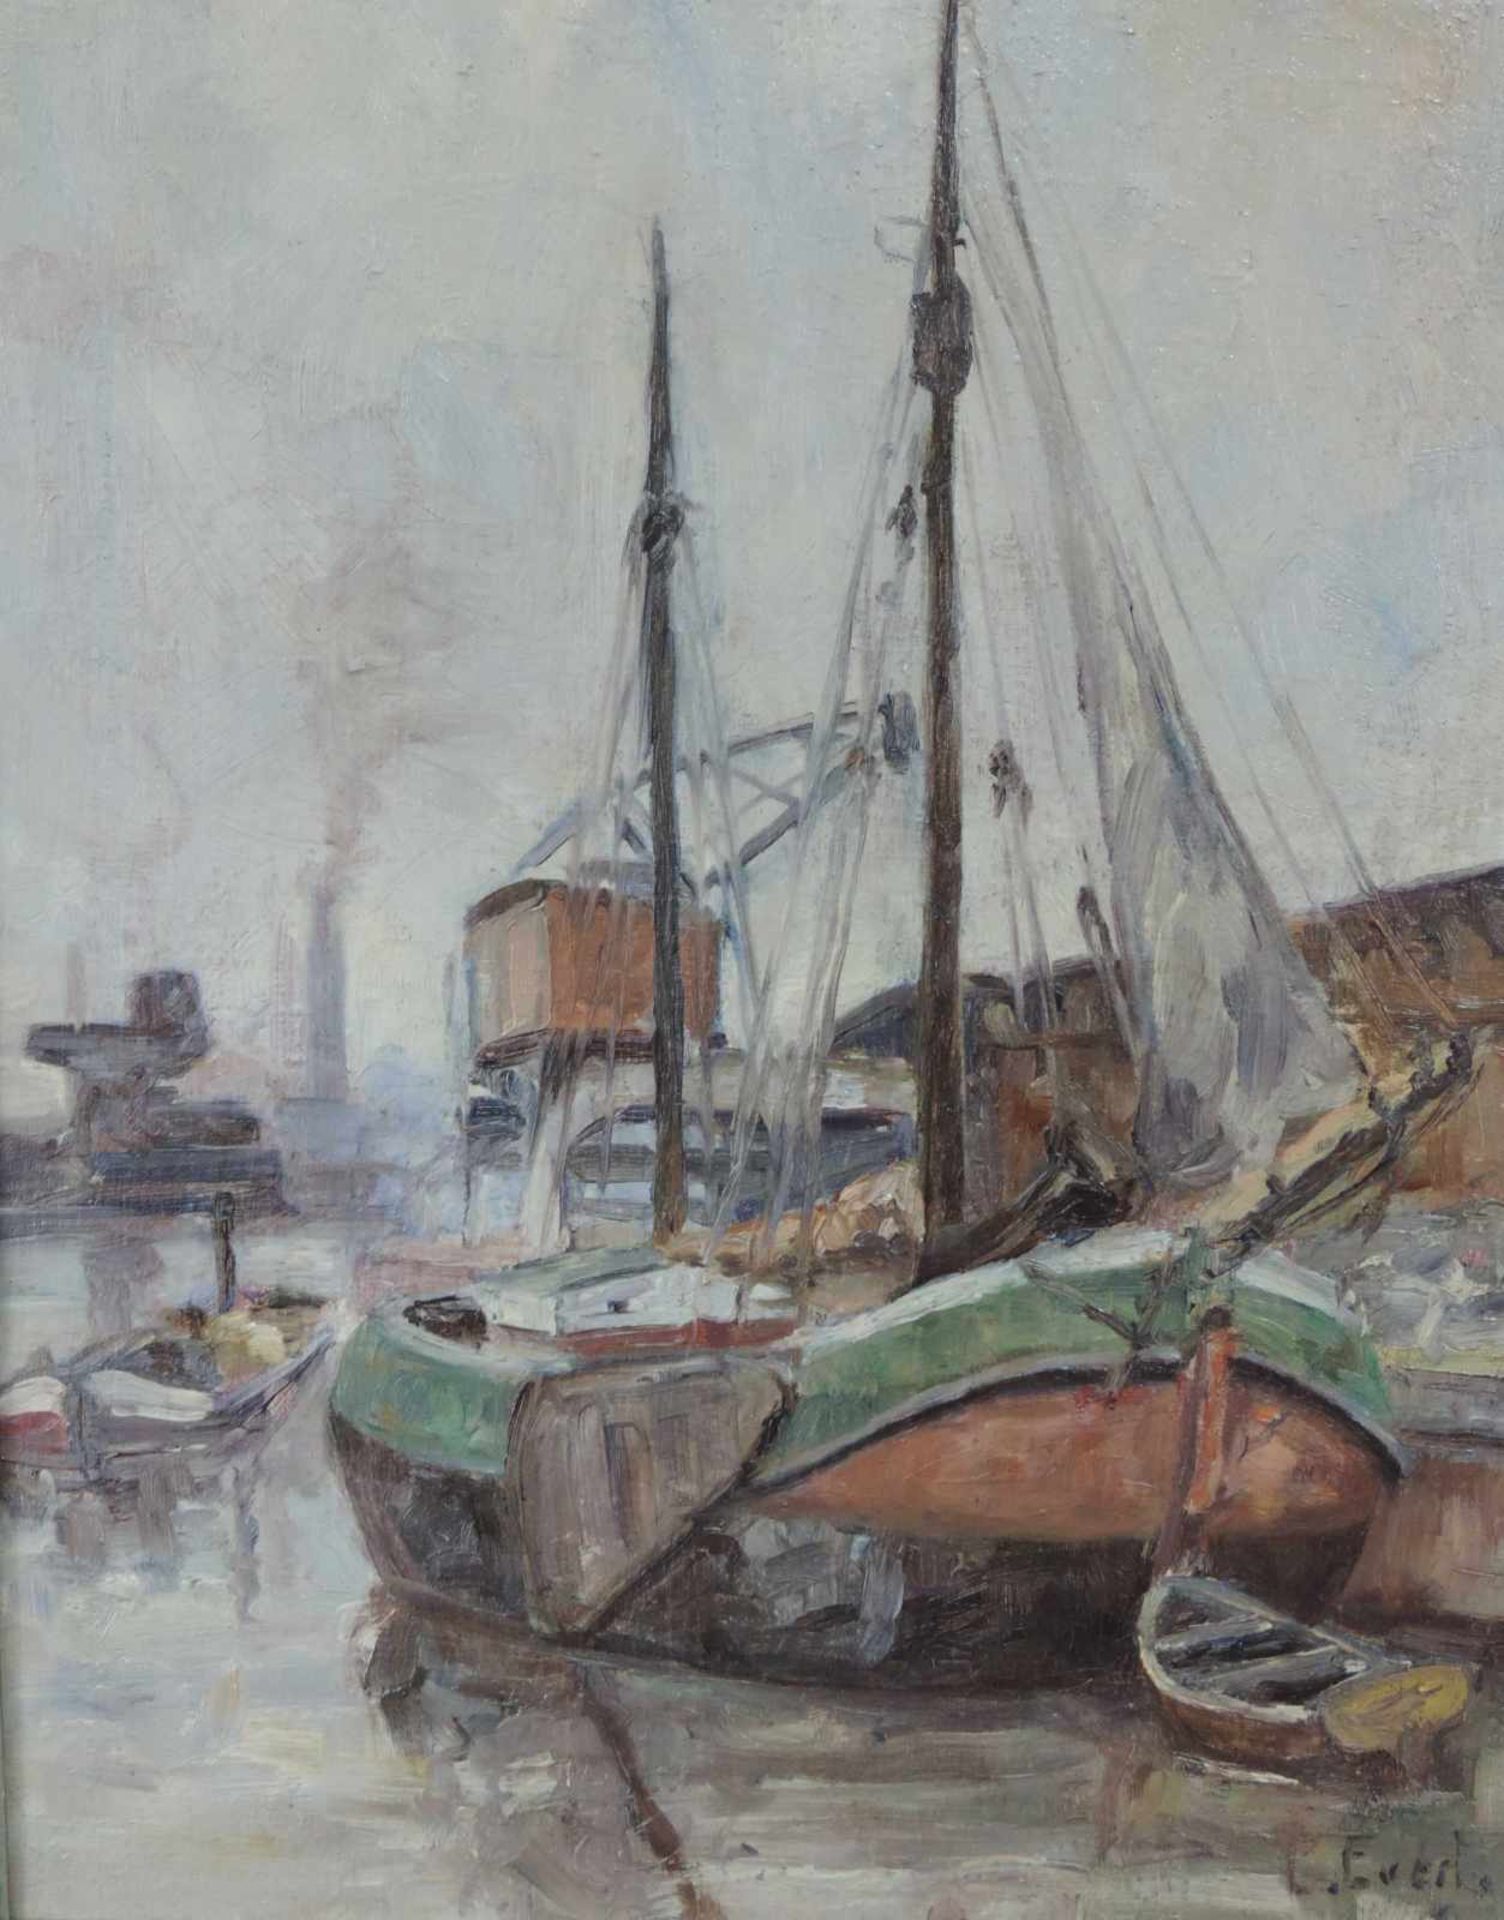 Evert PIETERS (1856 - 1932). Plattbodenschiff im Hafen. 50 cm x 39,5 cm. Gemälde. Öl auf Leinwand. - Image 4 of 7